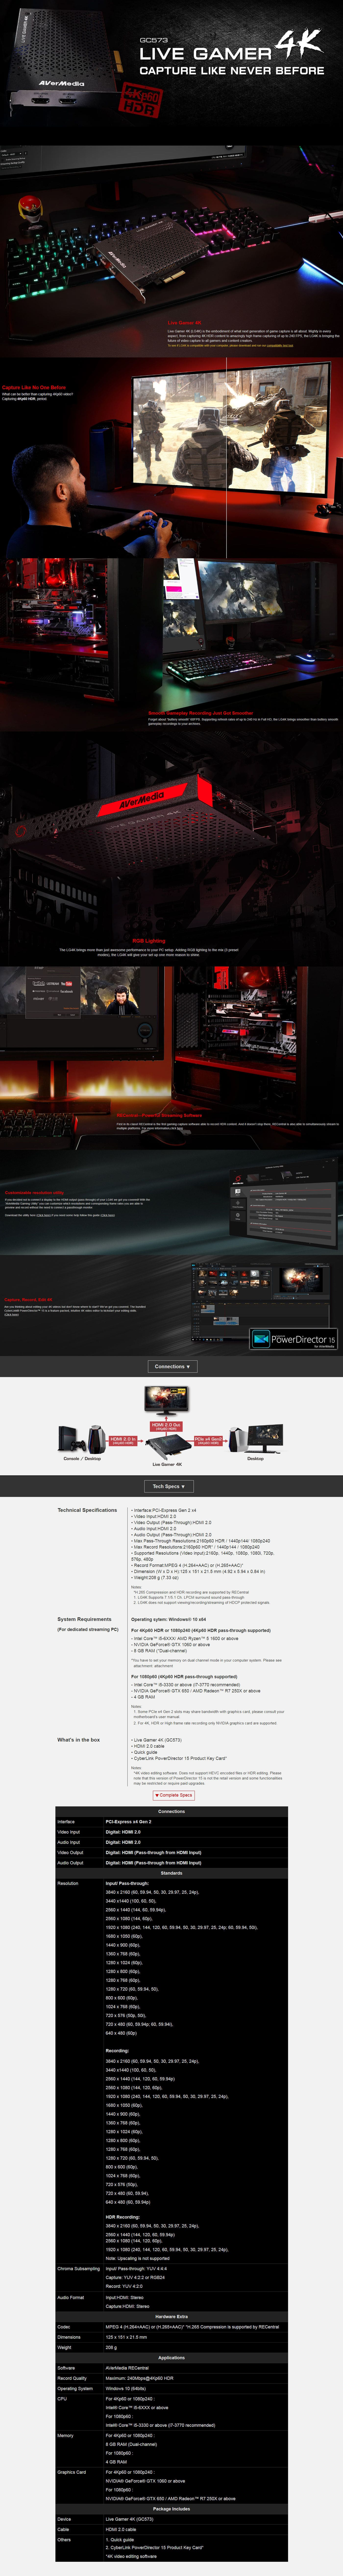  Buy Online Avermedia Live Gamer 4K (GC573)